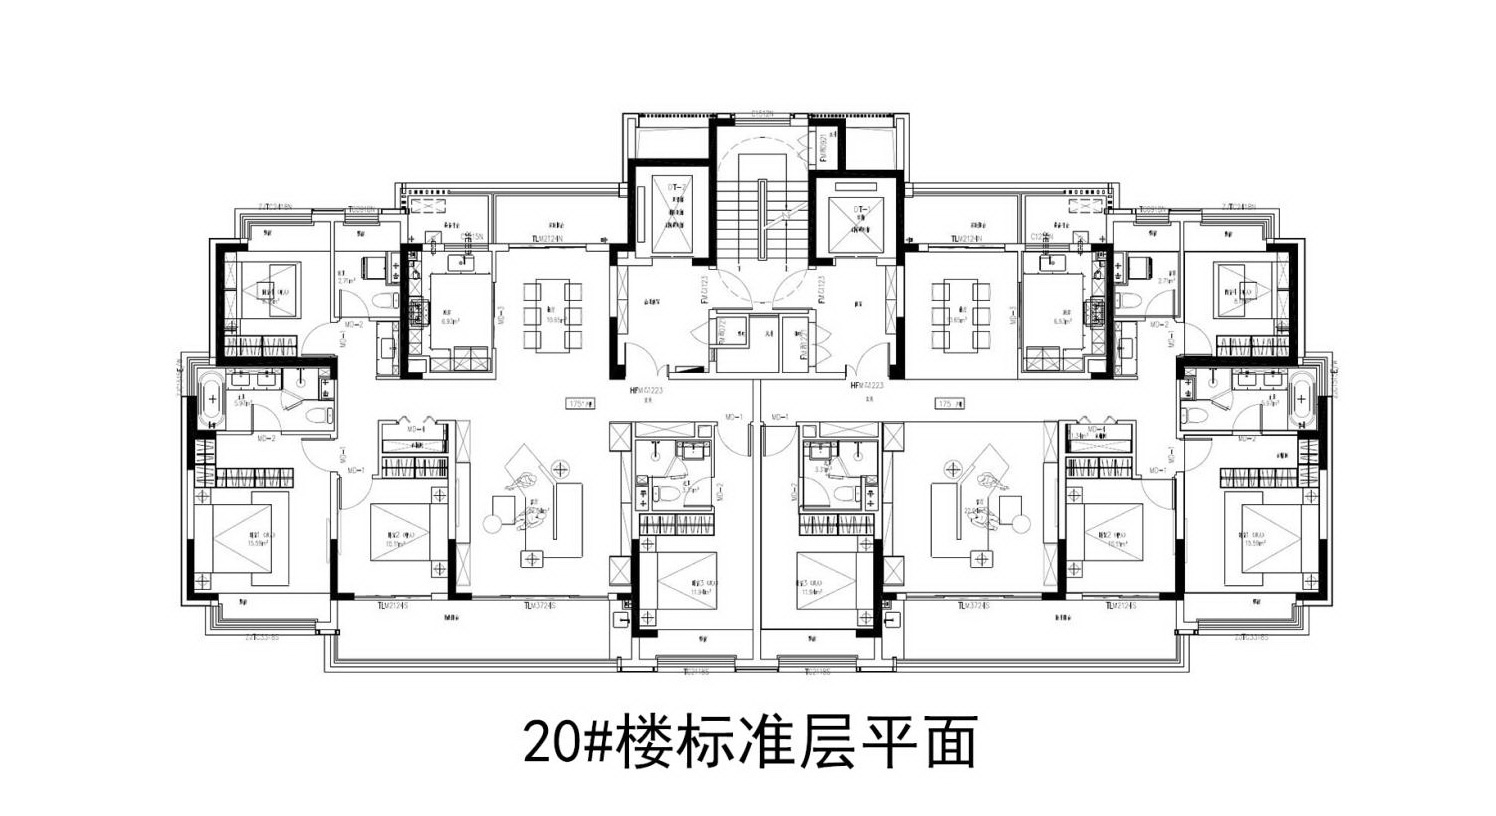 苏地2021-WG-24号地块 #20幢标准层 户型设计